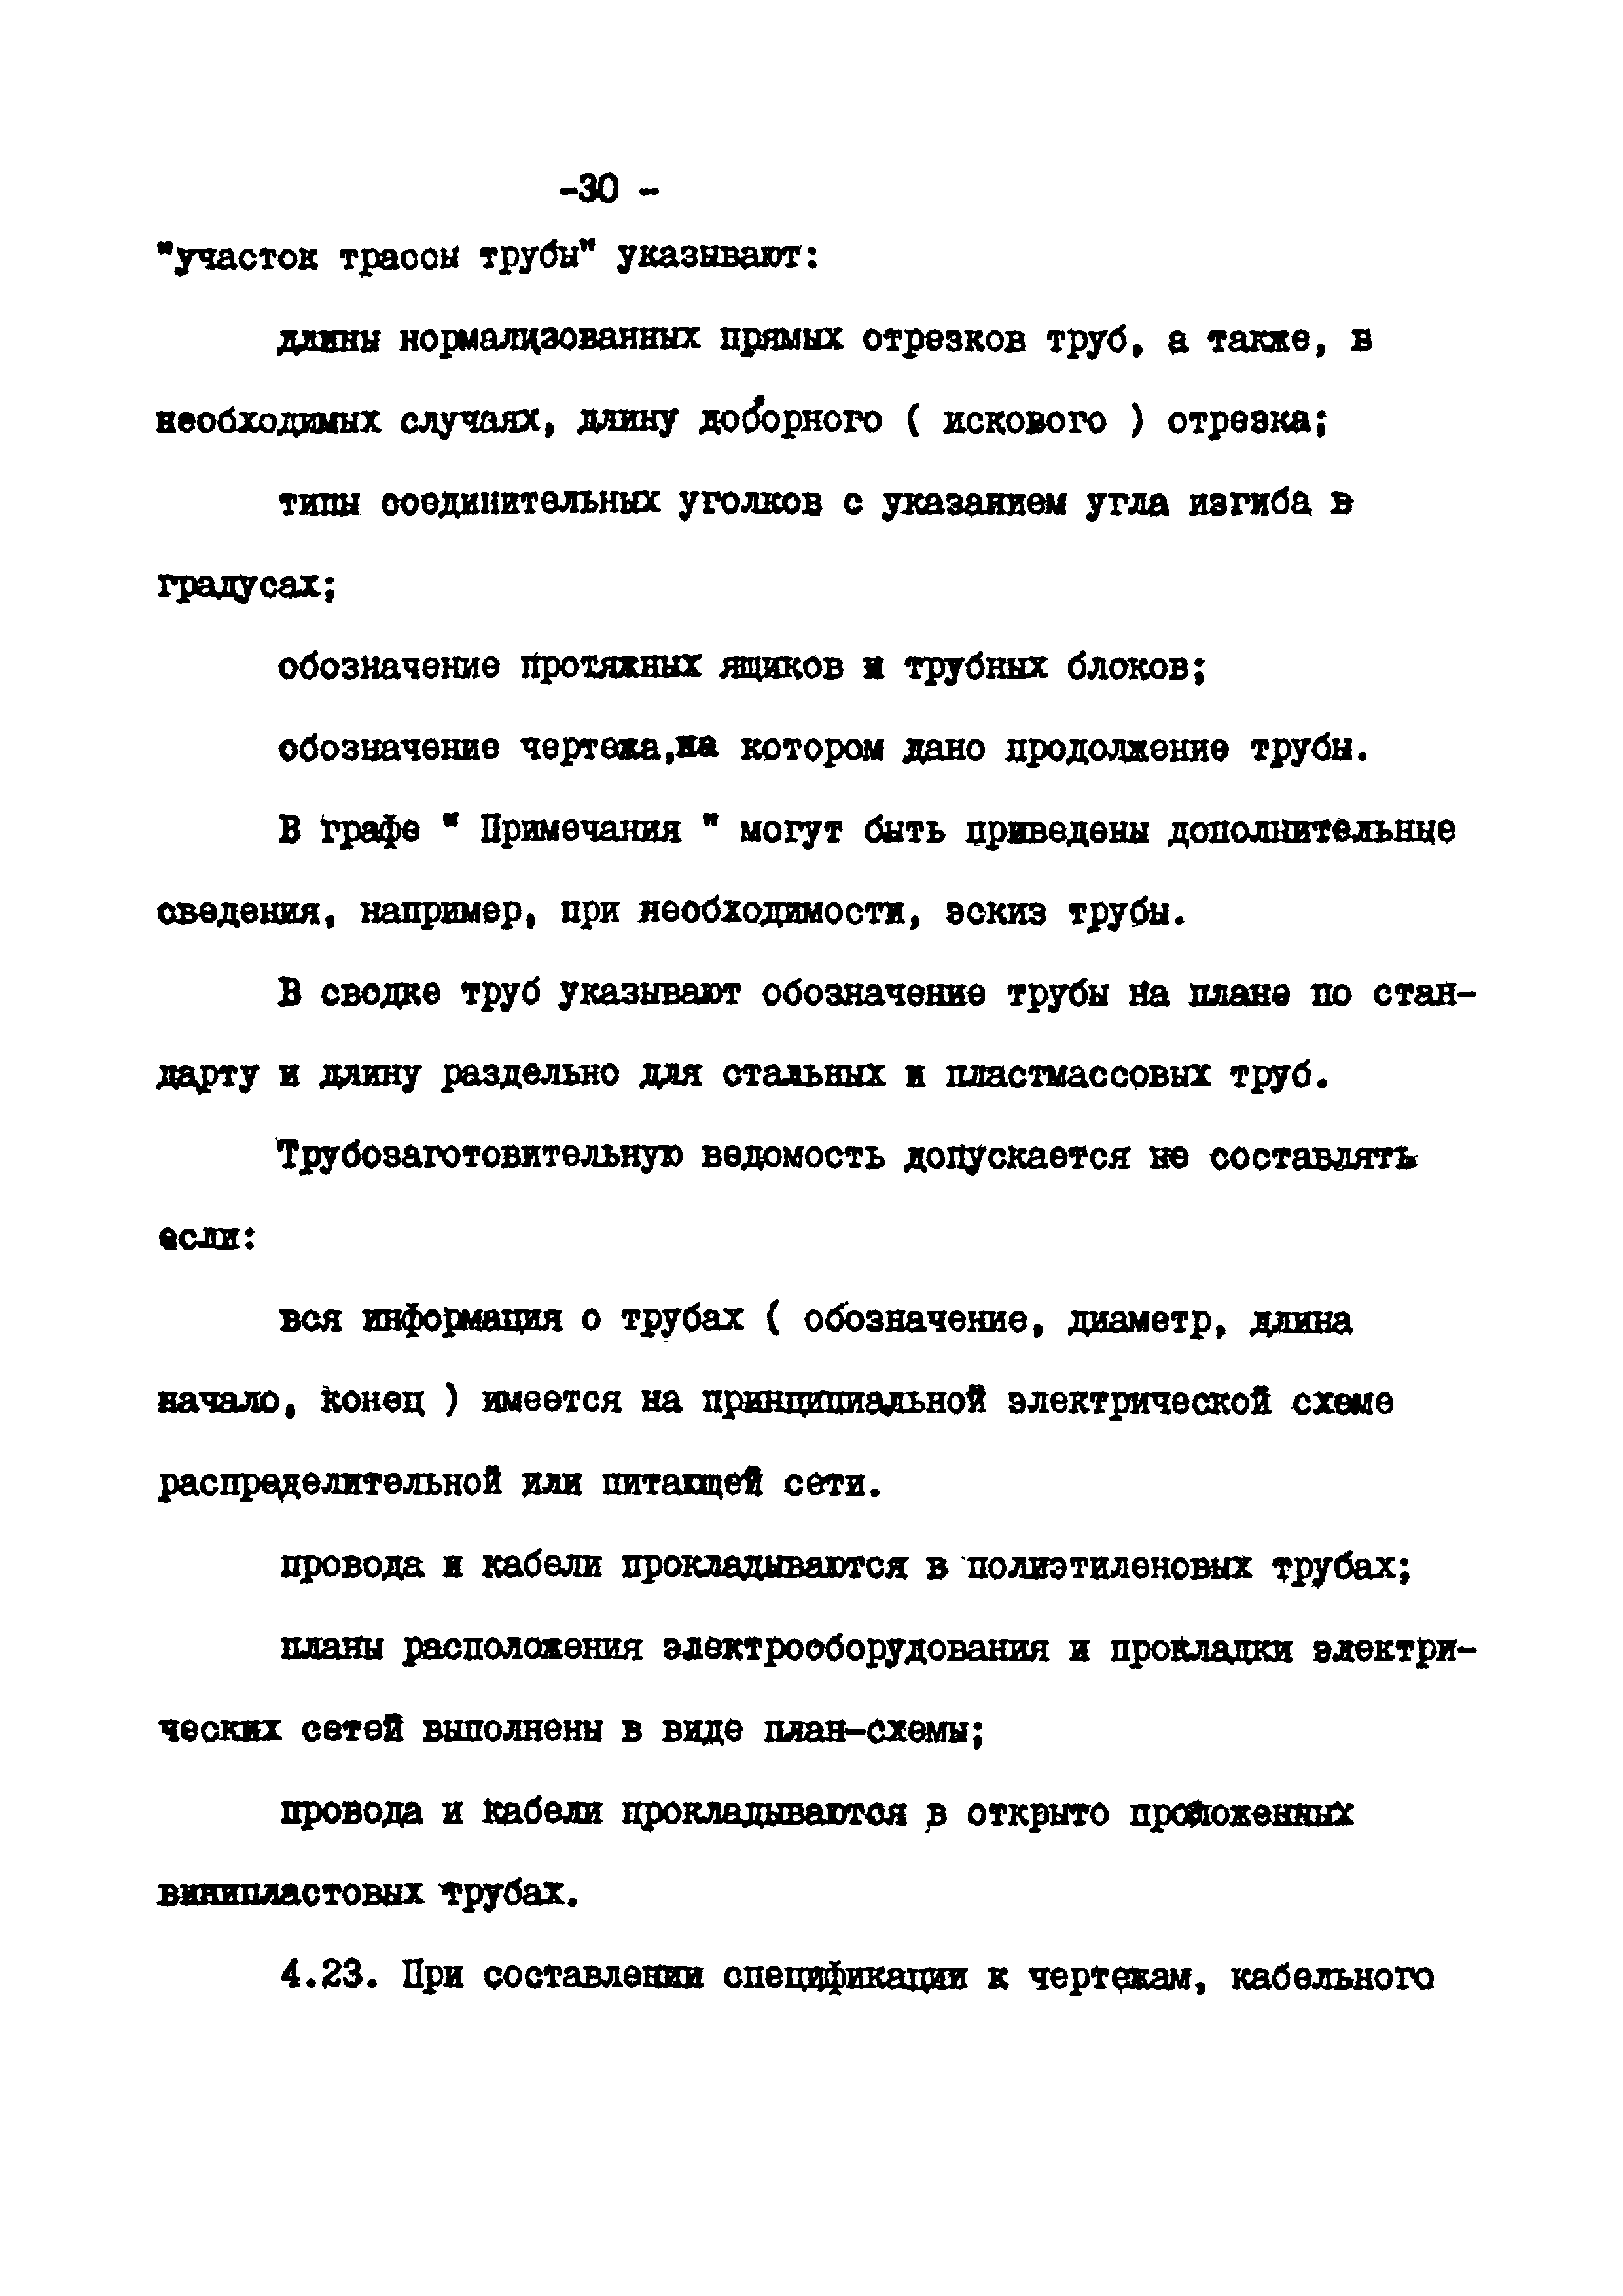 ВСН 381-85